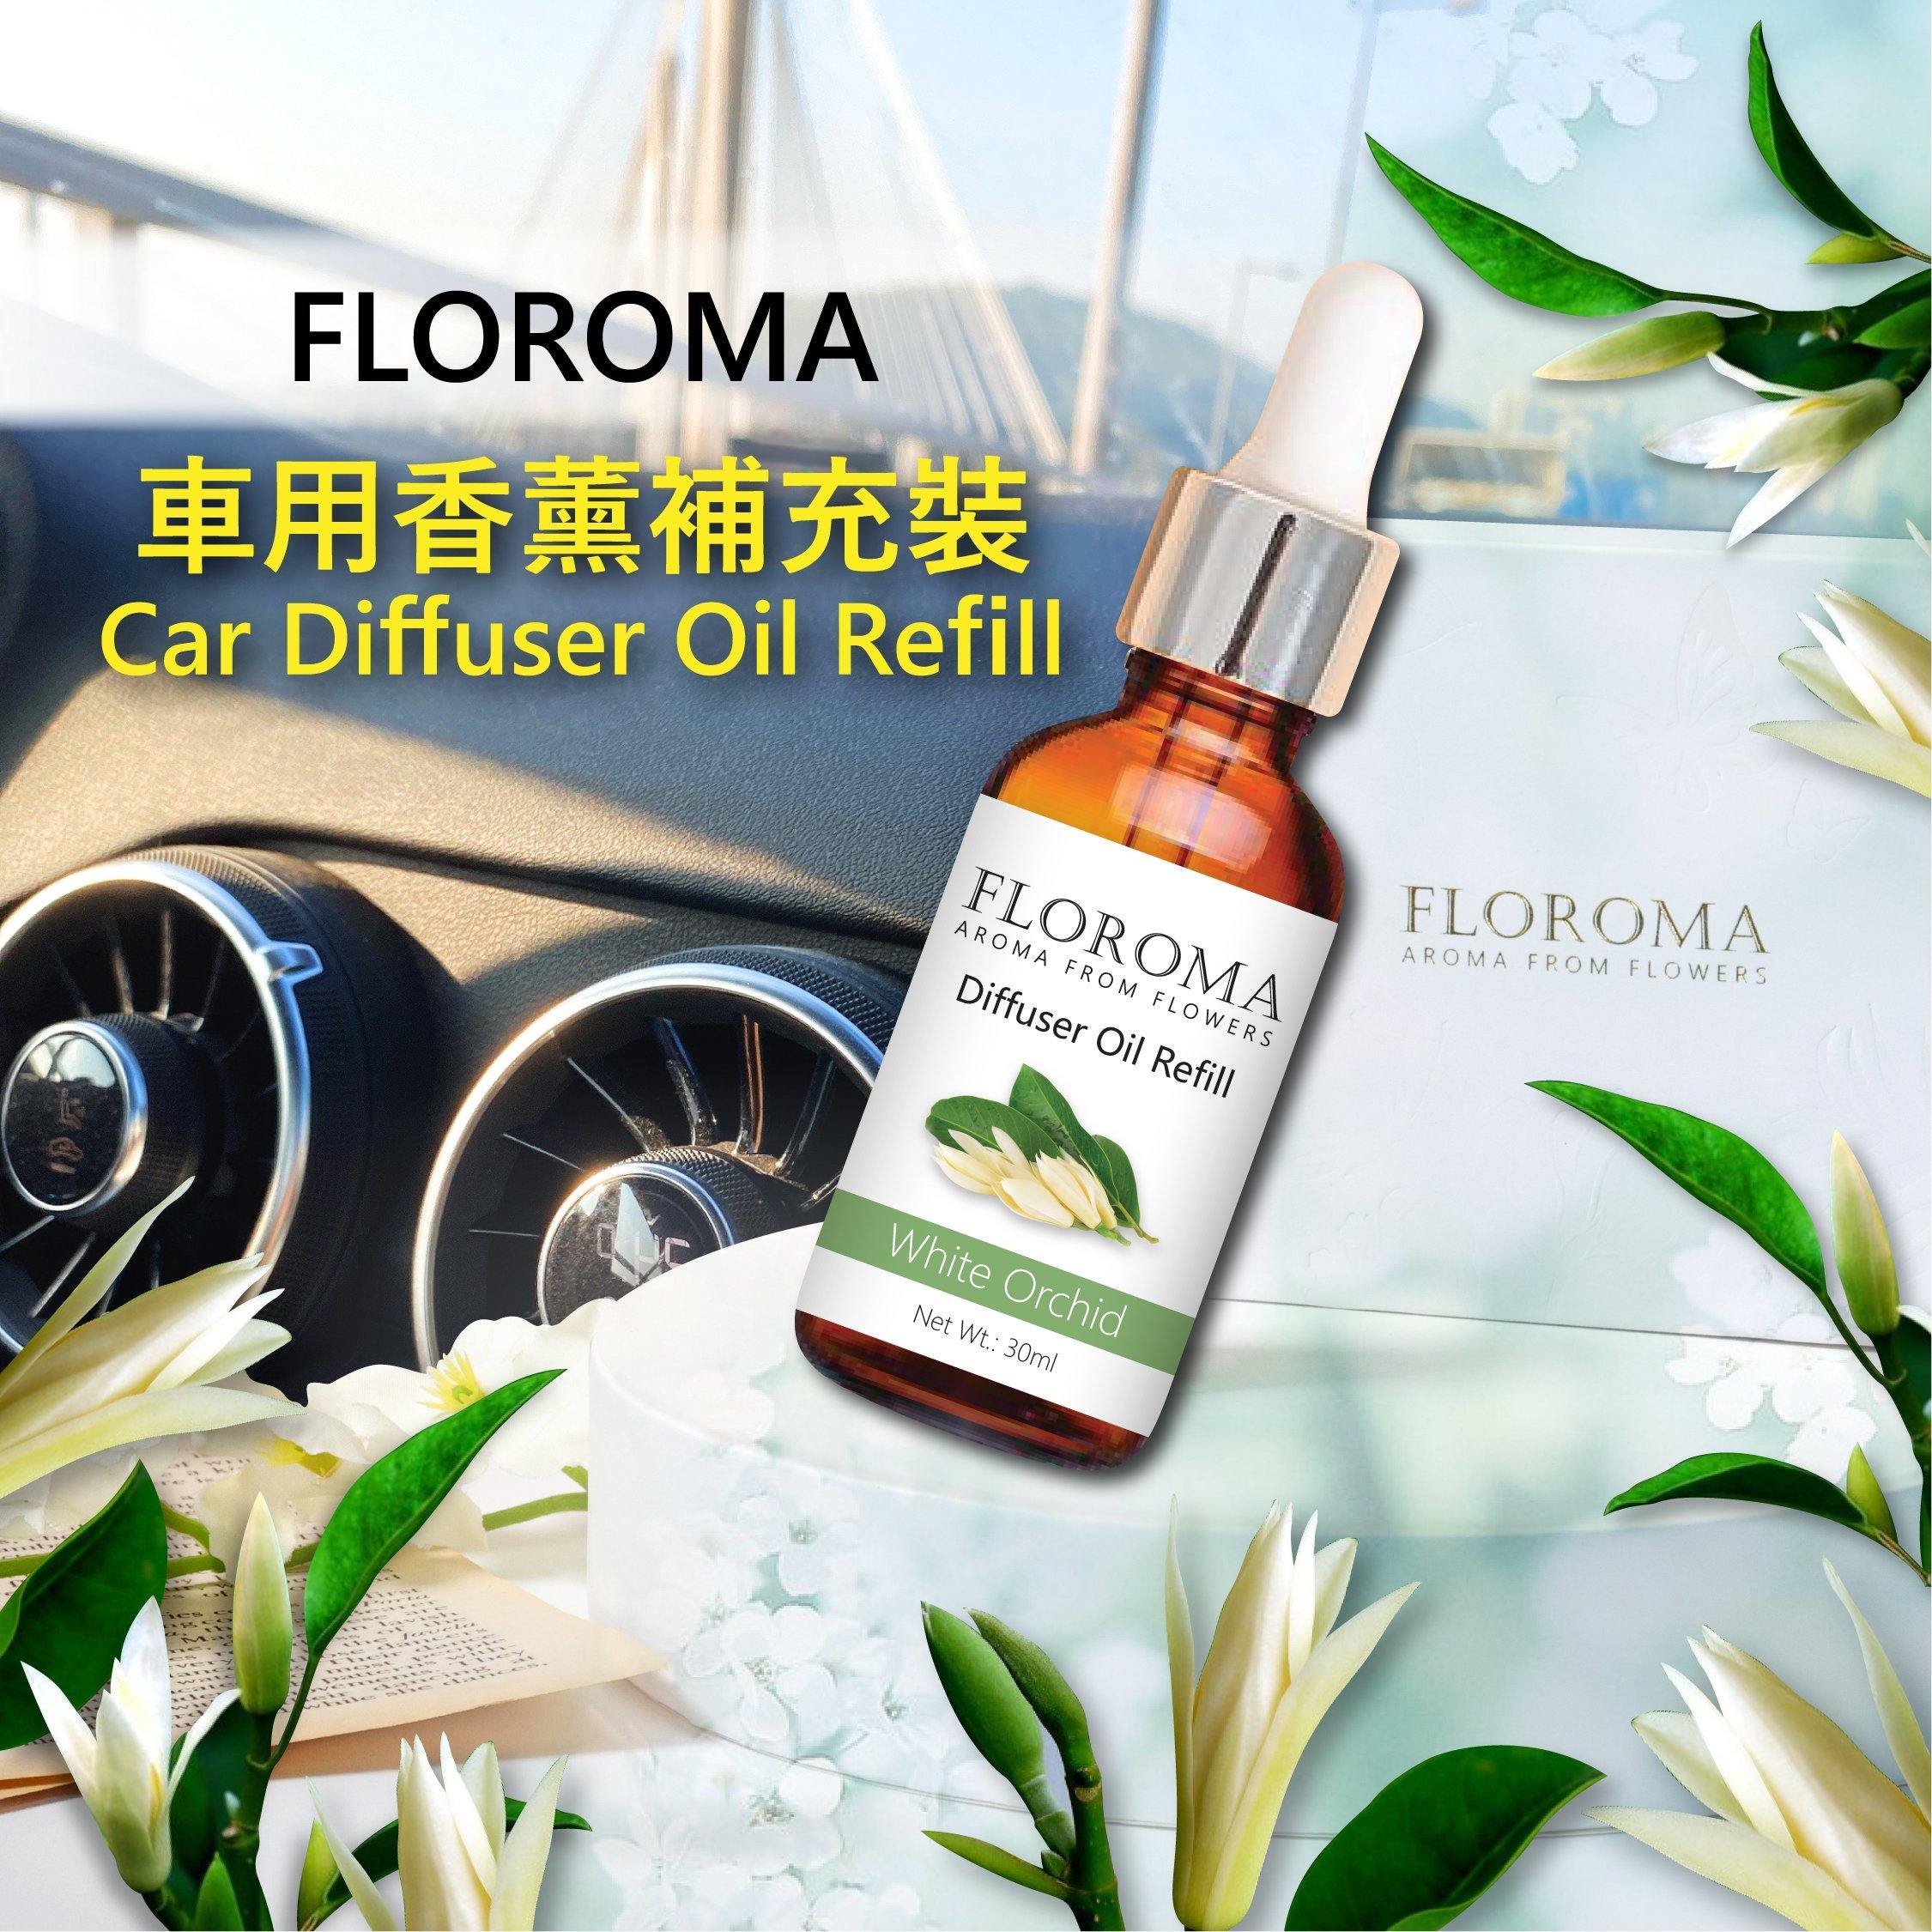 新!! 花之滴【車用香薰補充裝】Car Diffuser Oil Refill - Floroma 花の滴